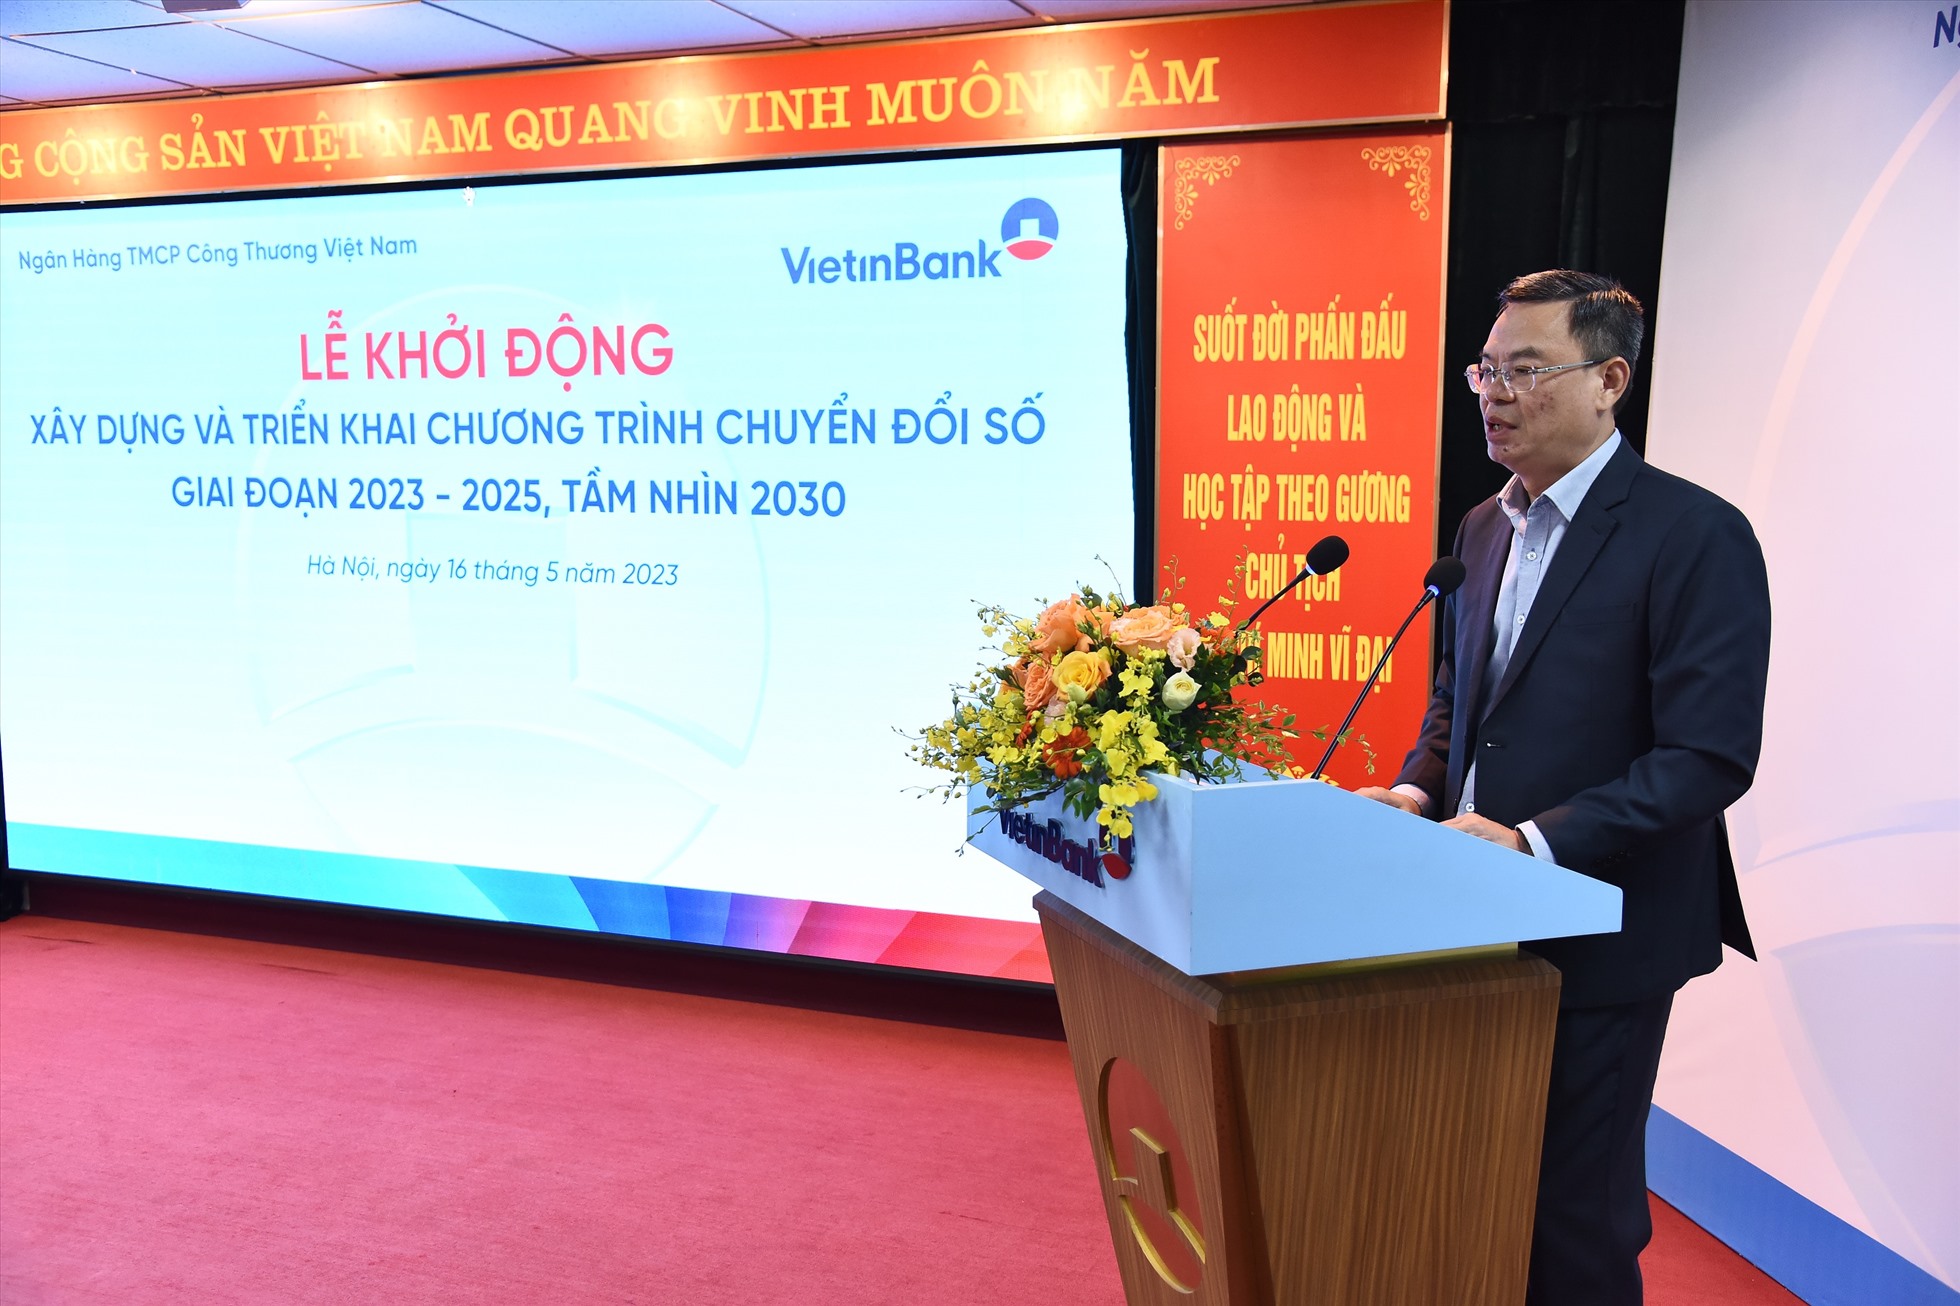 Ông Trần Minh Bình - Chủ tịch HĐQT VietinBank phát biểu tại Lễ Khởi động xây dựng và triển khai chương trình Chuyển đổi số tại VietinBank giai đoạn 2023 - 2025, tầm nhìn 2030. Ảnh: VietinBank